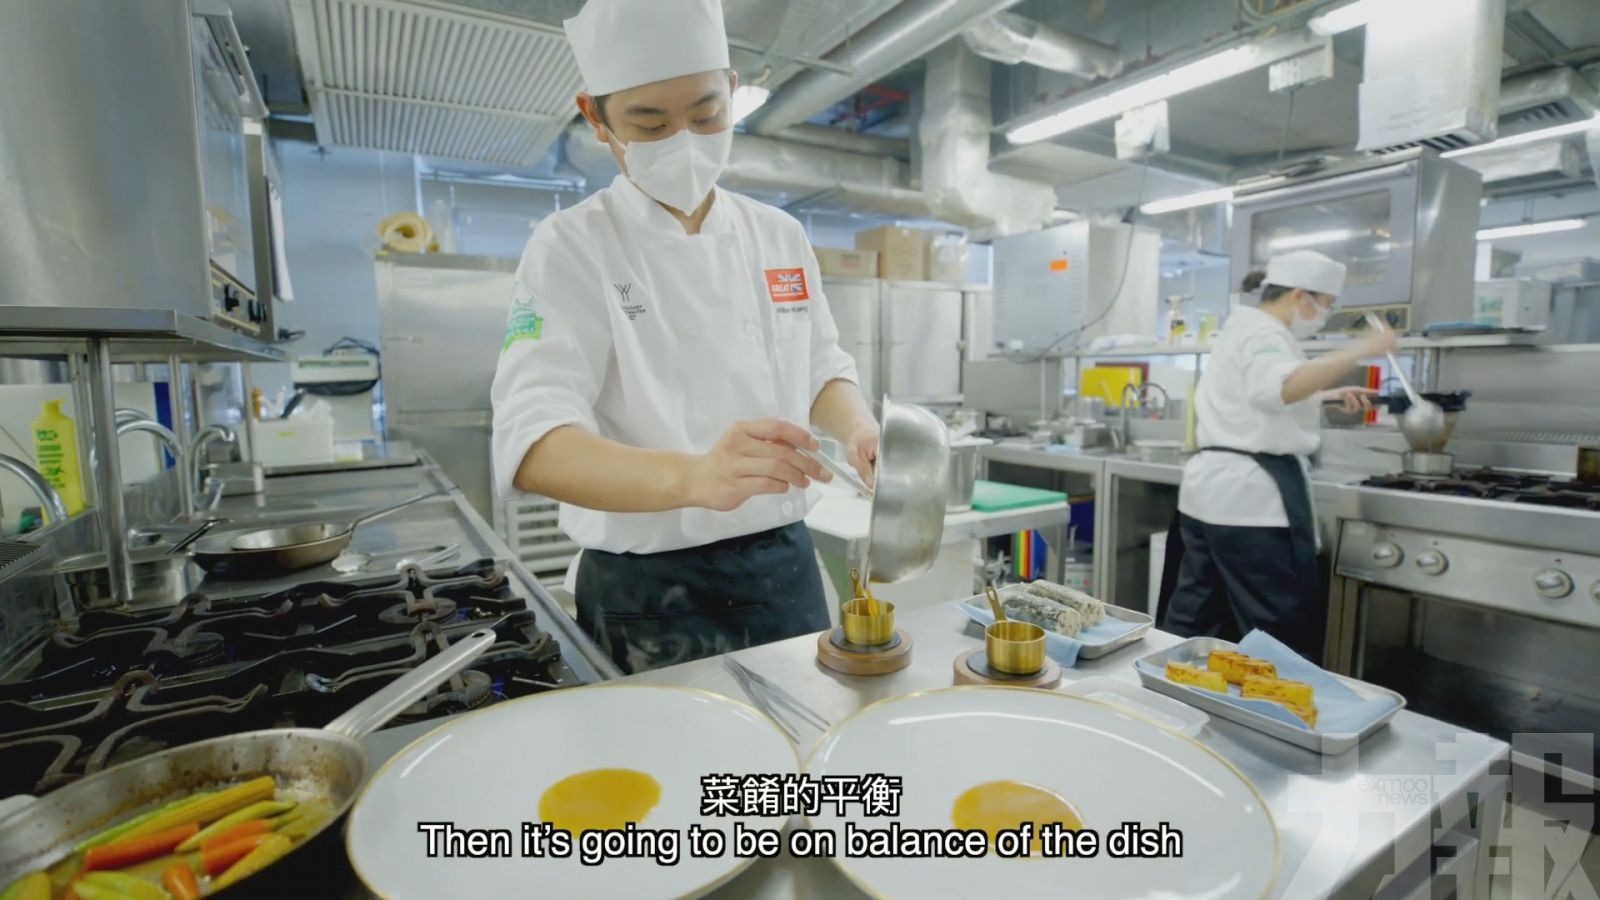 旅局製短片宣傳澳門美食文化